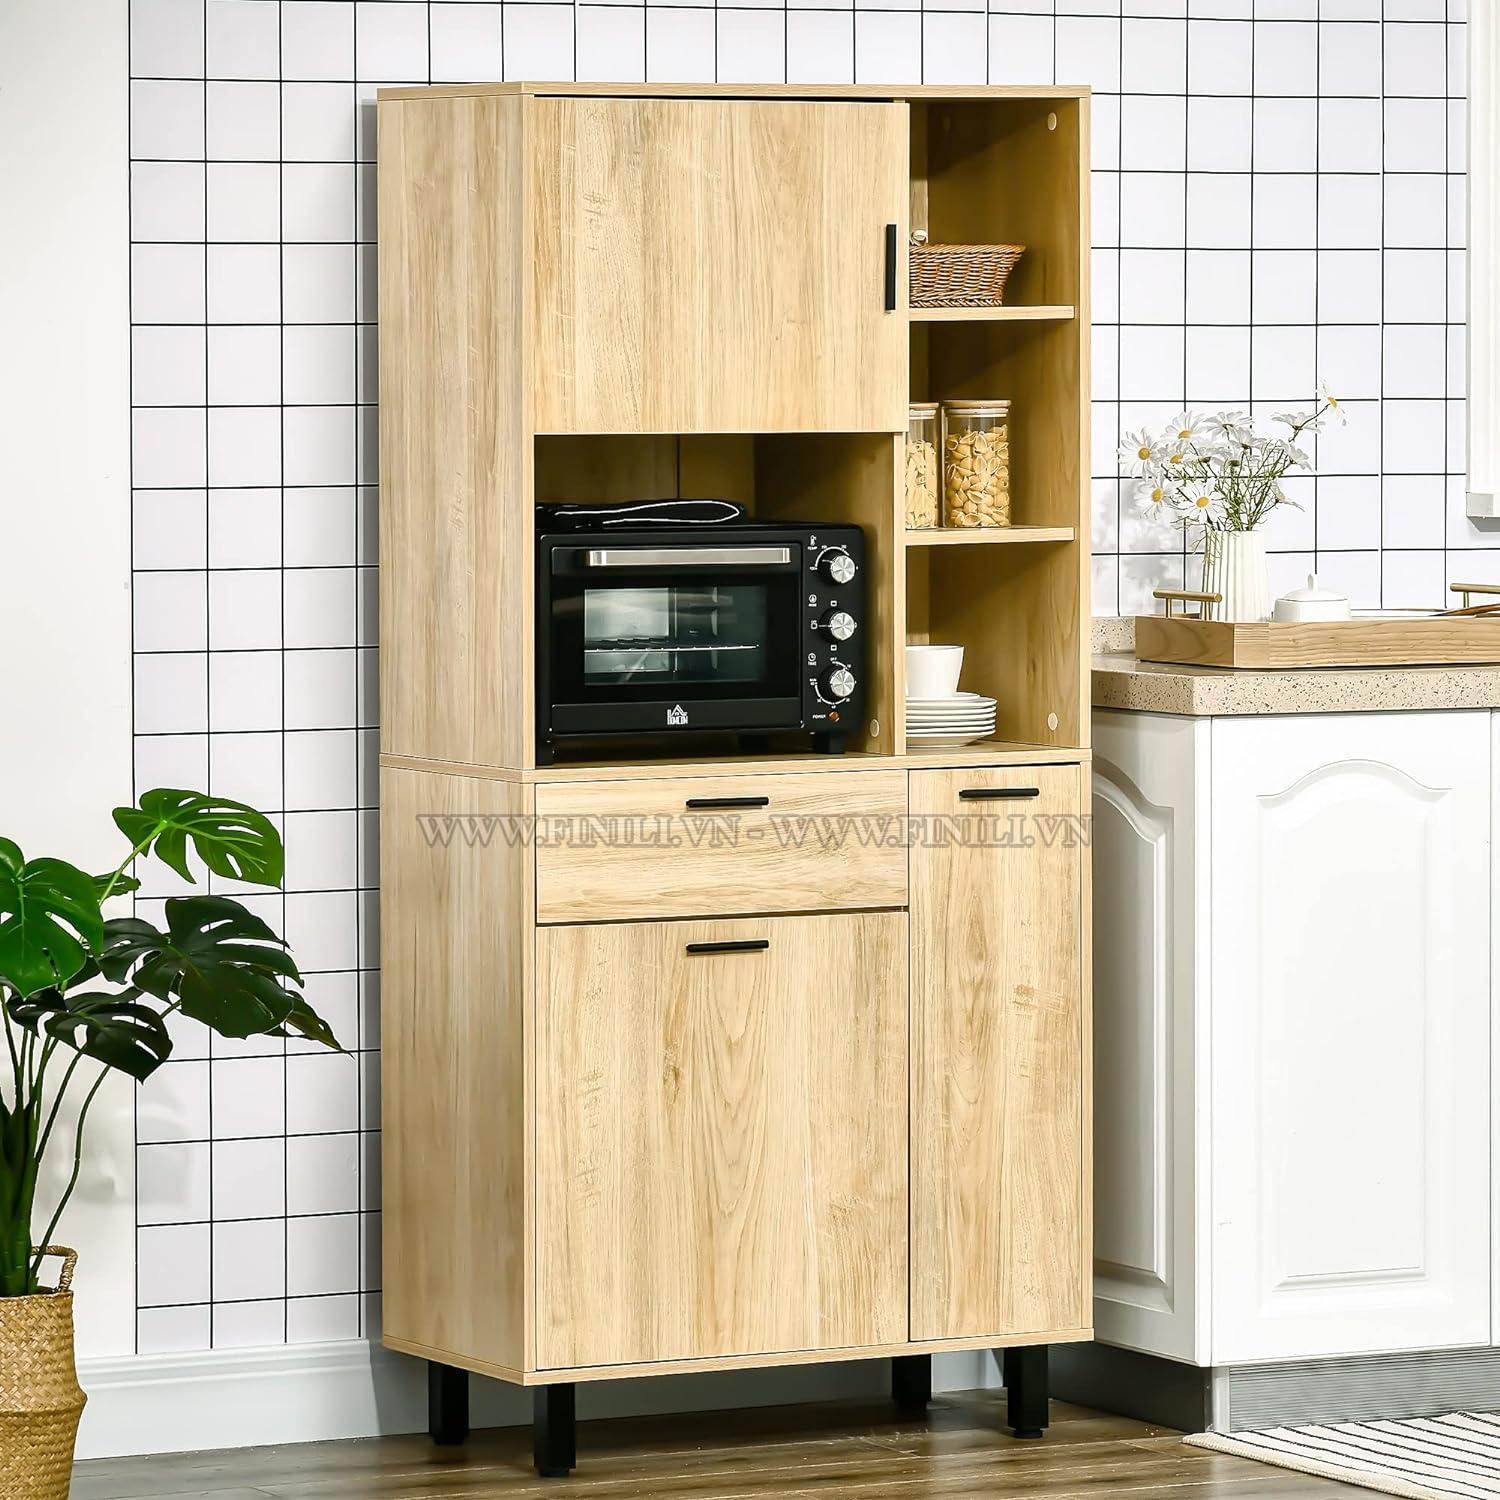 Tủ bếp được làm từ 100% gỗ sồi tự nhiên đã qua quá trình tẩm sấy hiện đại